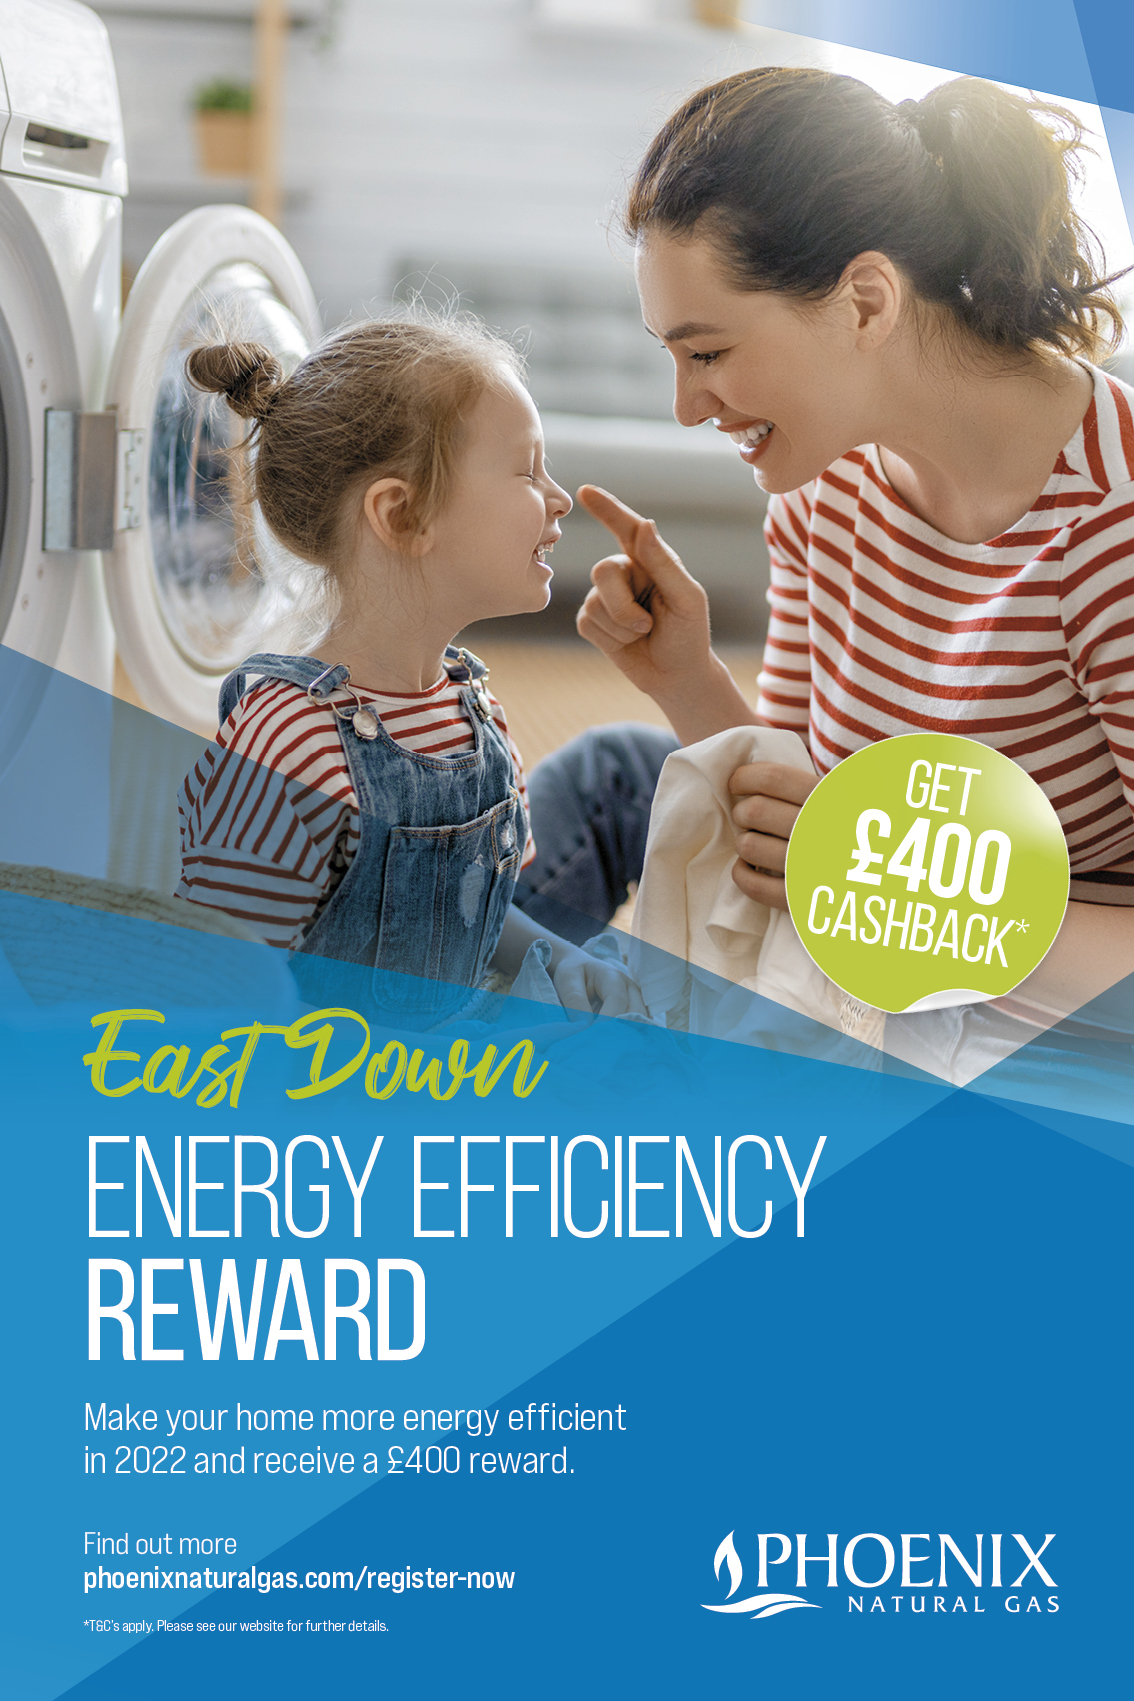 014139 Png Q1 East Down Energy Efficiency Reward 6 Sheet Opt2